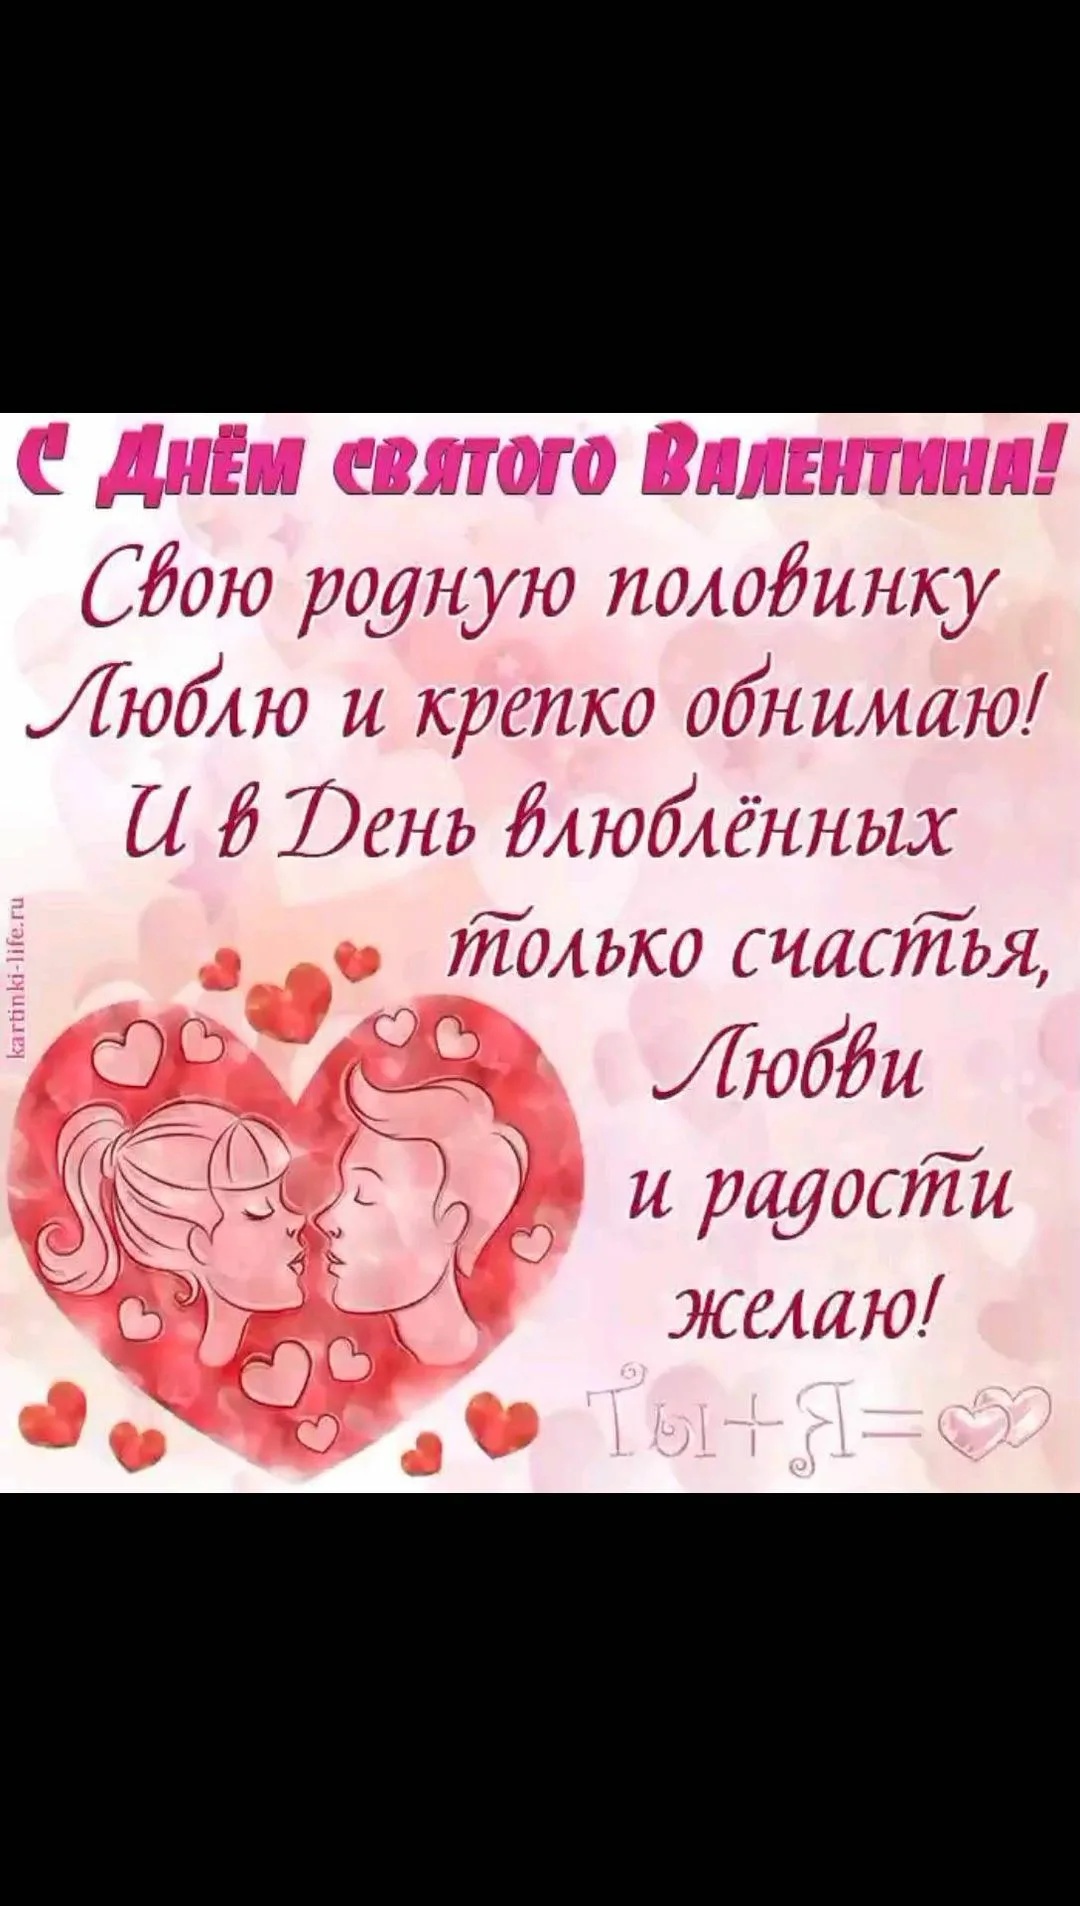 Поздравительная открытка ко Дню святого Валентина с изображением влюбленной пары, сердечками и пожеланиями любви и счастья.